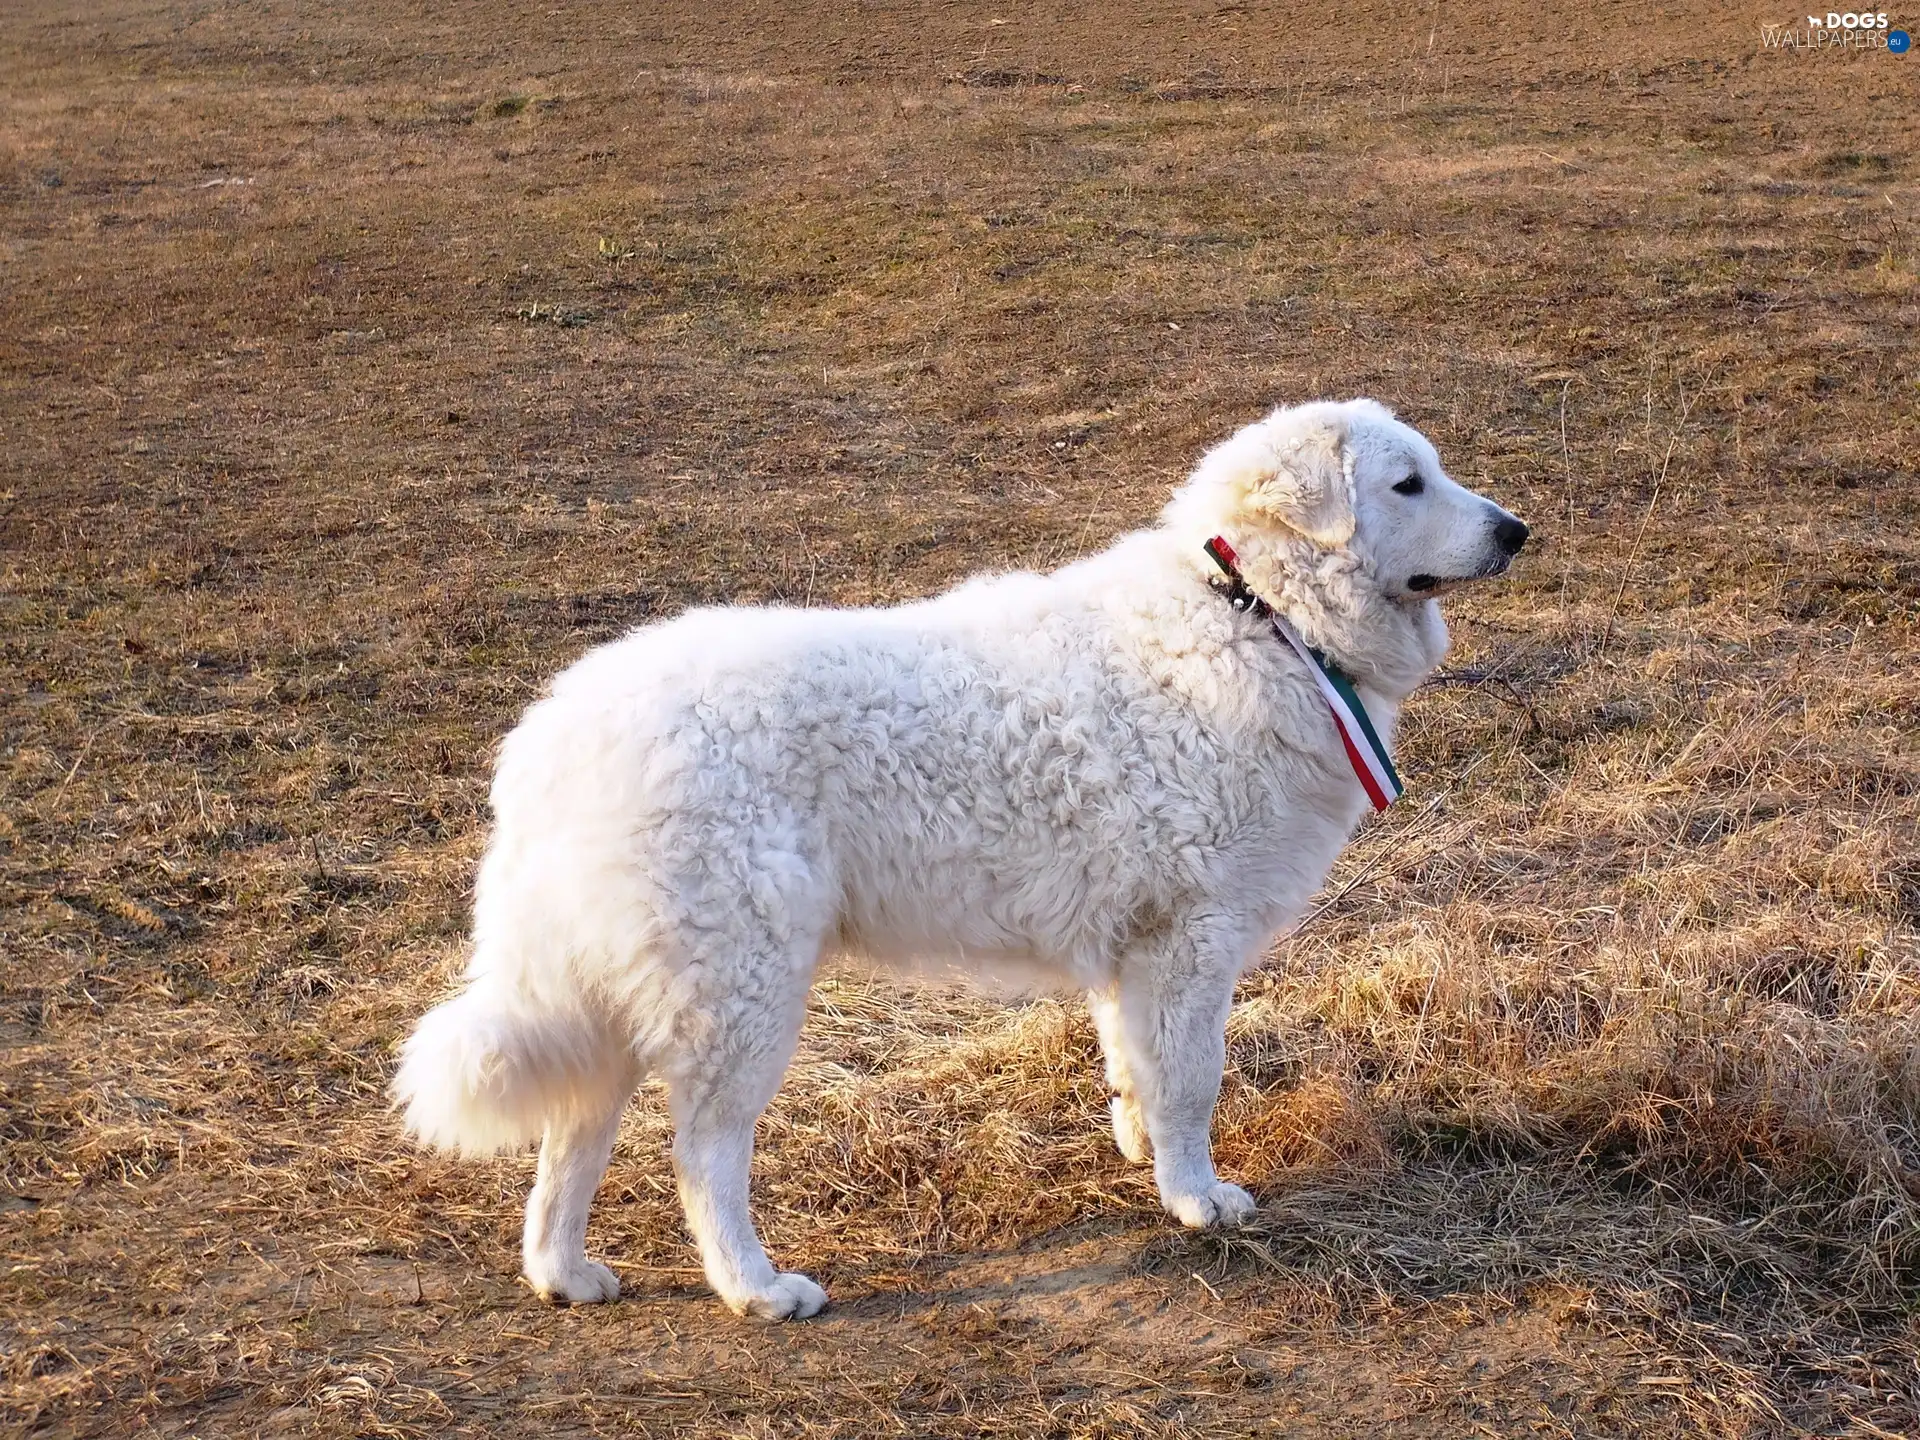 White, Shepherd Hungarian Kuvasz, adult